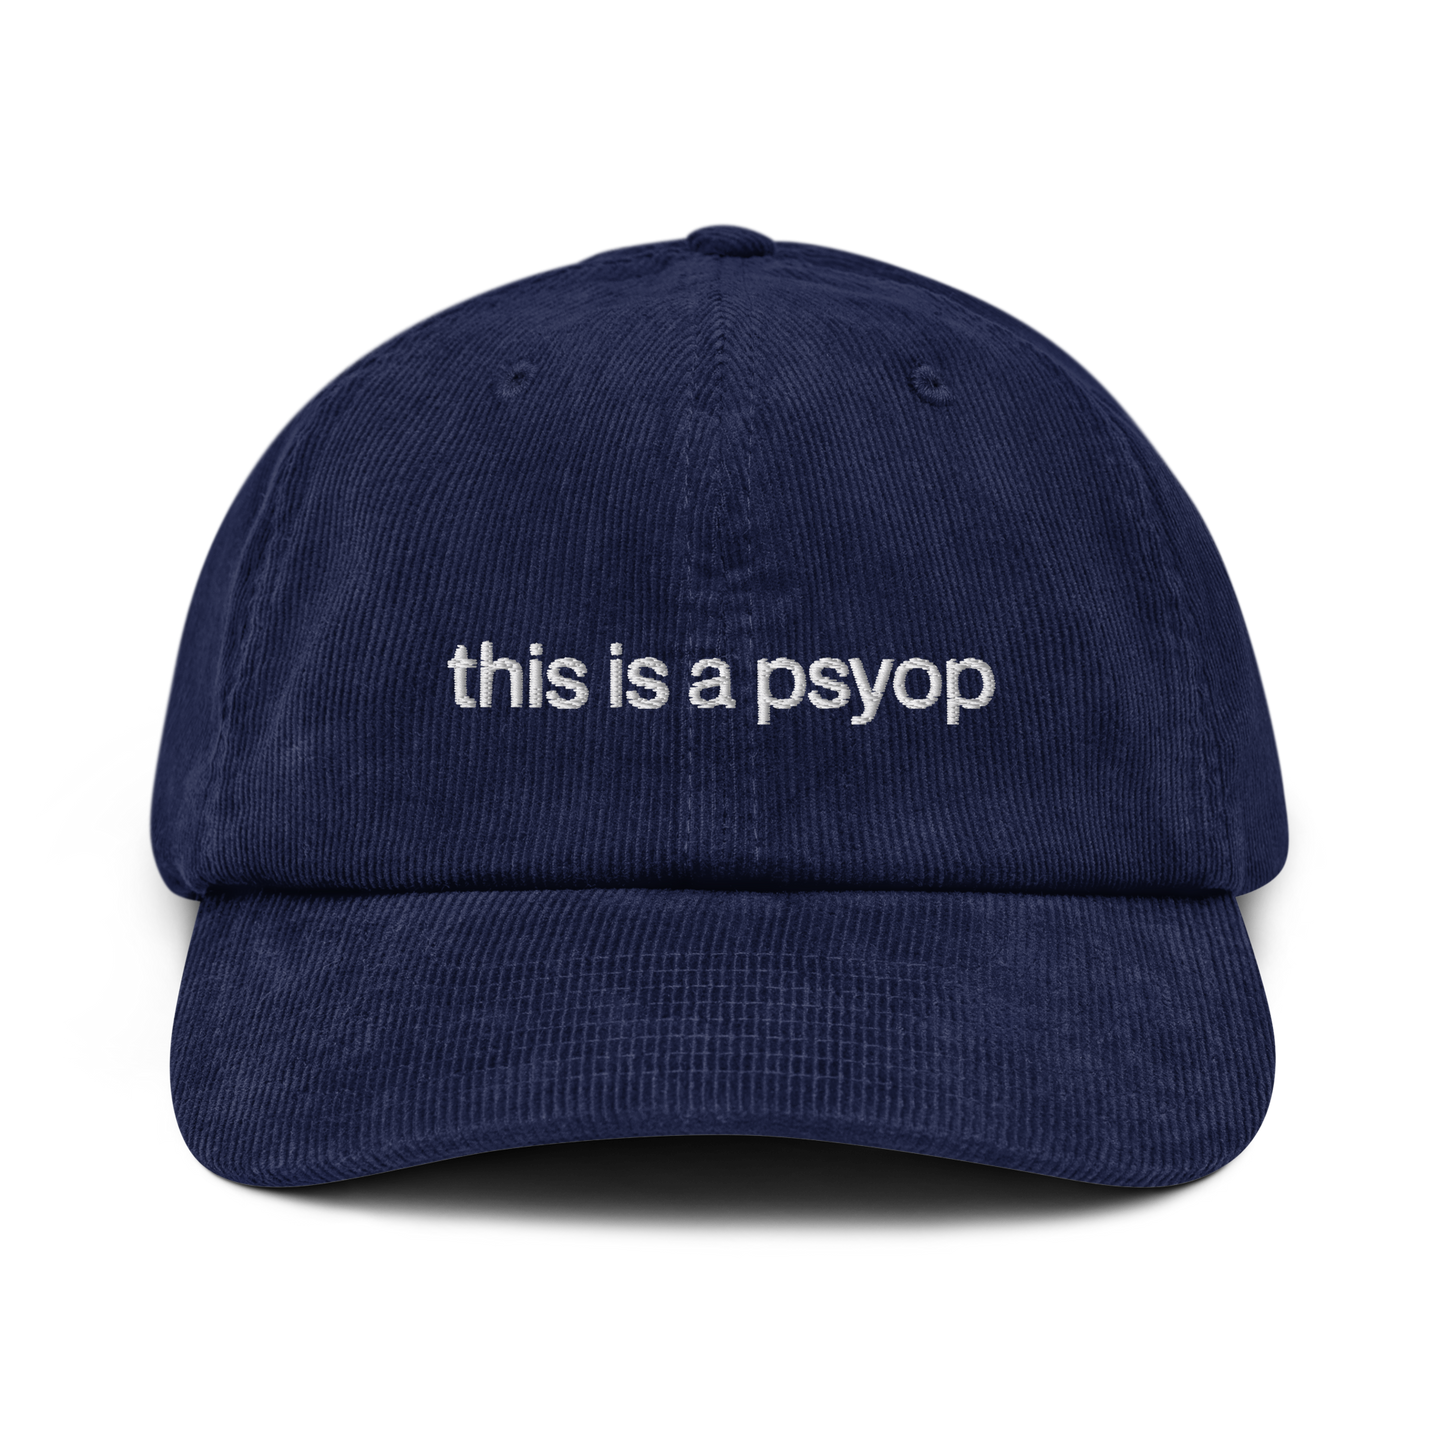 psyop hat